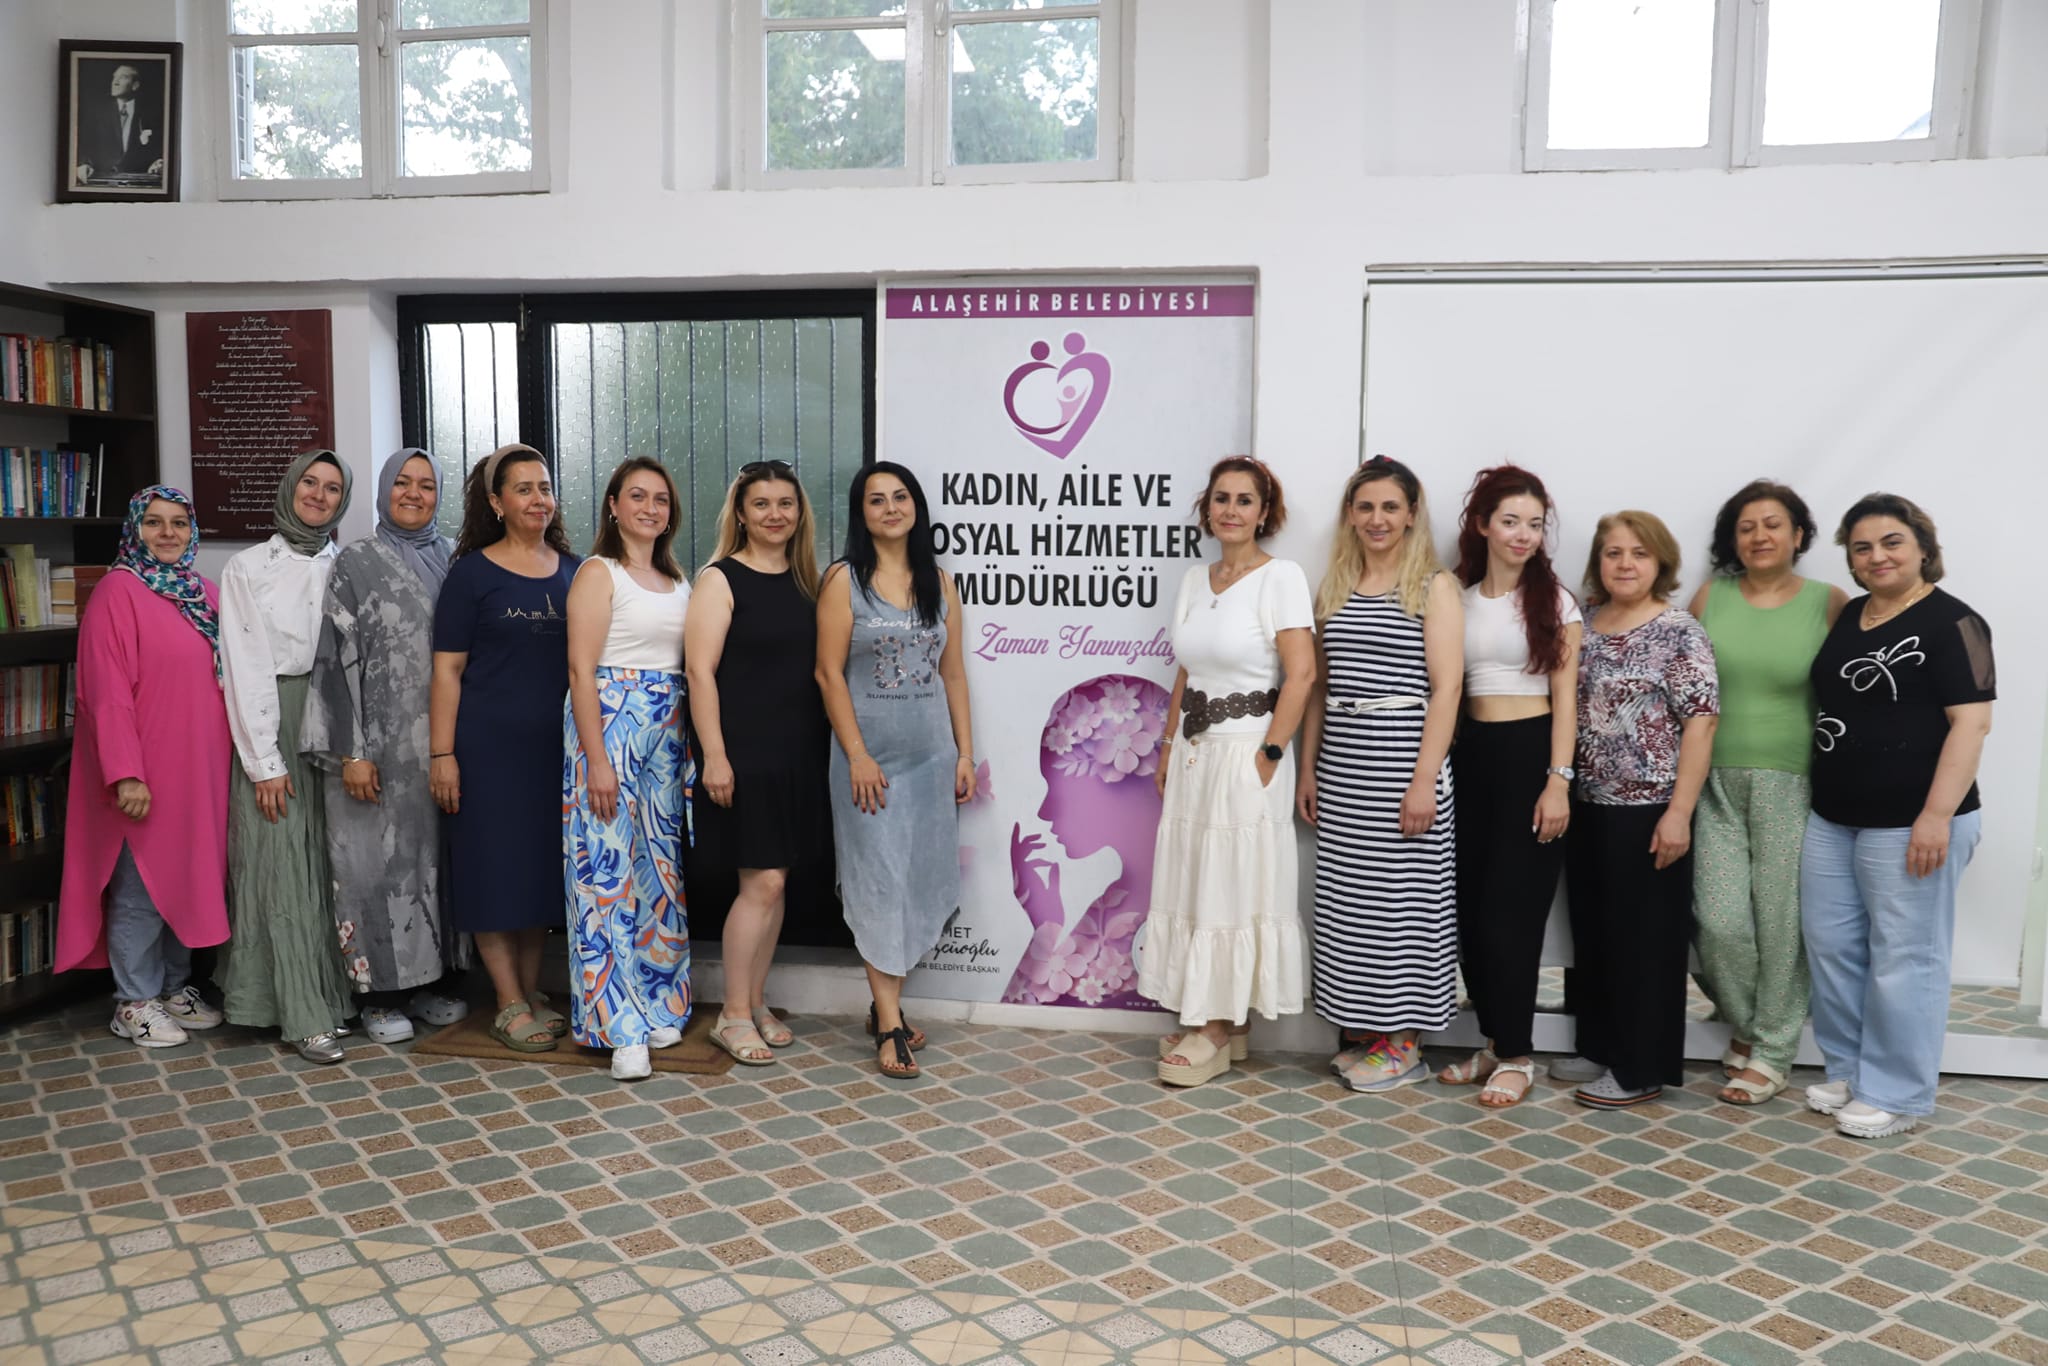 Alaşehir Belediyesi Kadın ve Aile Hizmetleri Bünyesinde Düzenlemiş Olduğumuz Astroloji Eğitimini Tamamladık